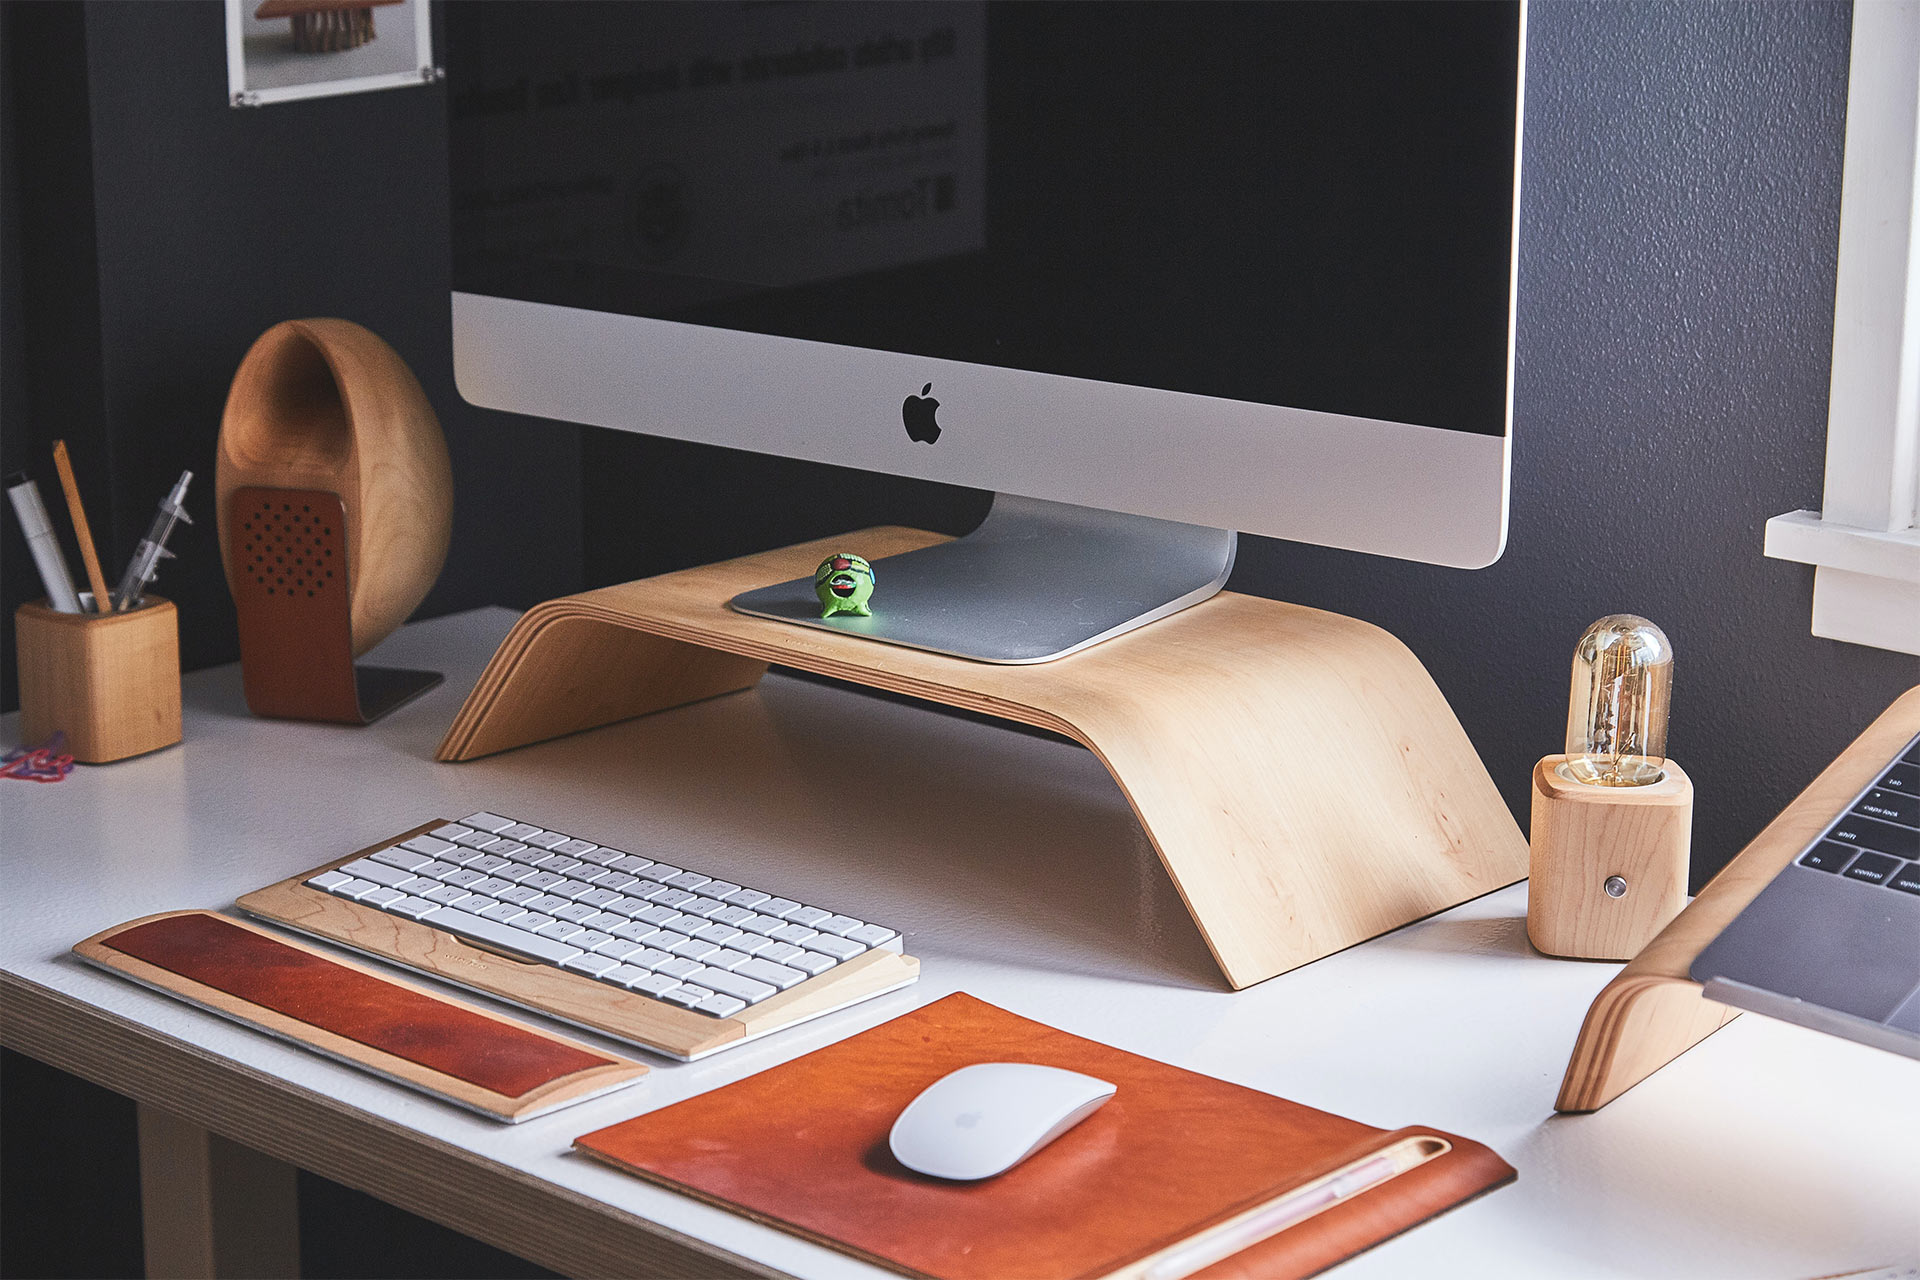 Ein Foto eines iMac-Monitors auf einem Holzständer auf einem Schreibtisch mit drahtloser Tastatur und Maus.